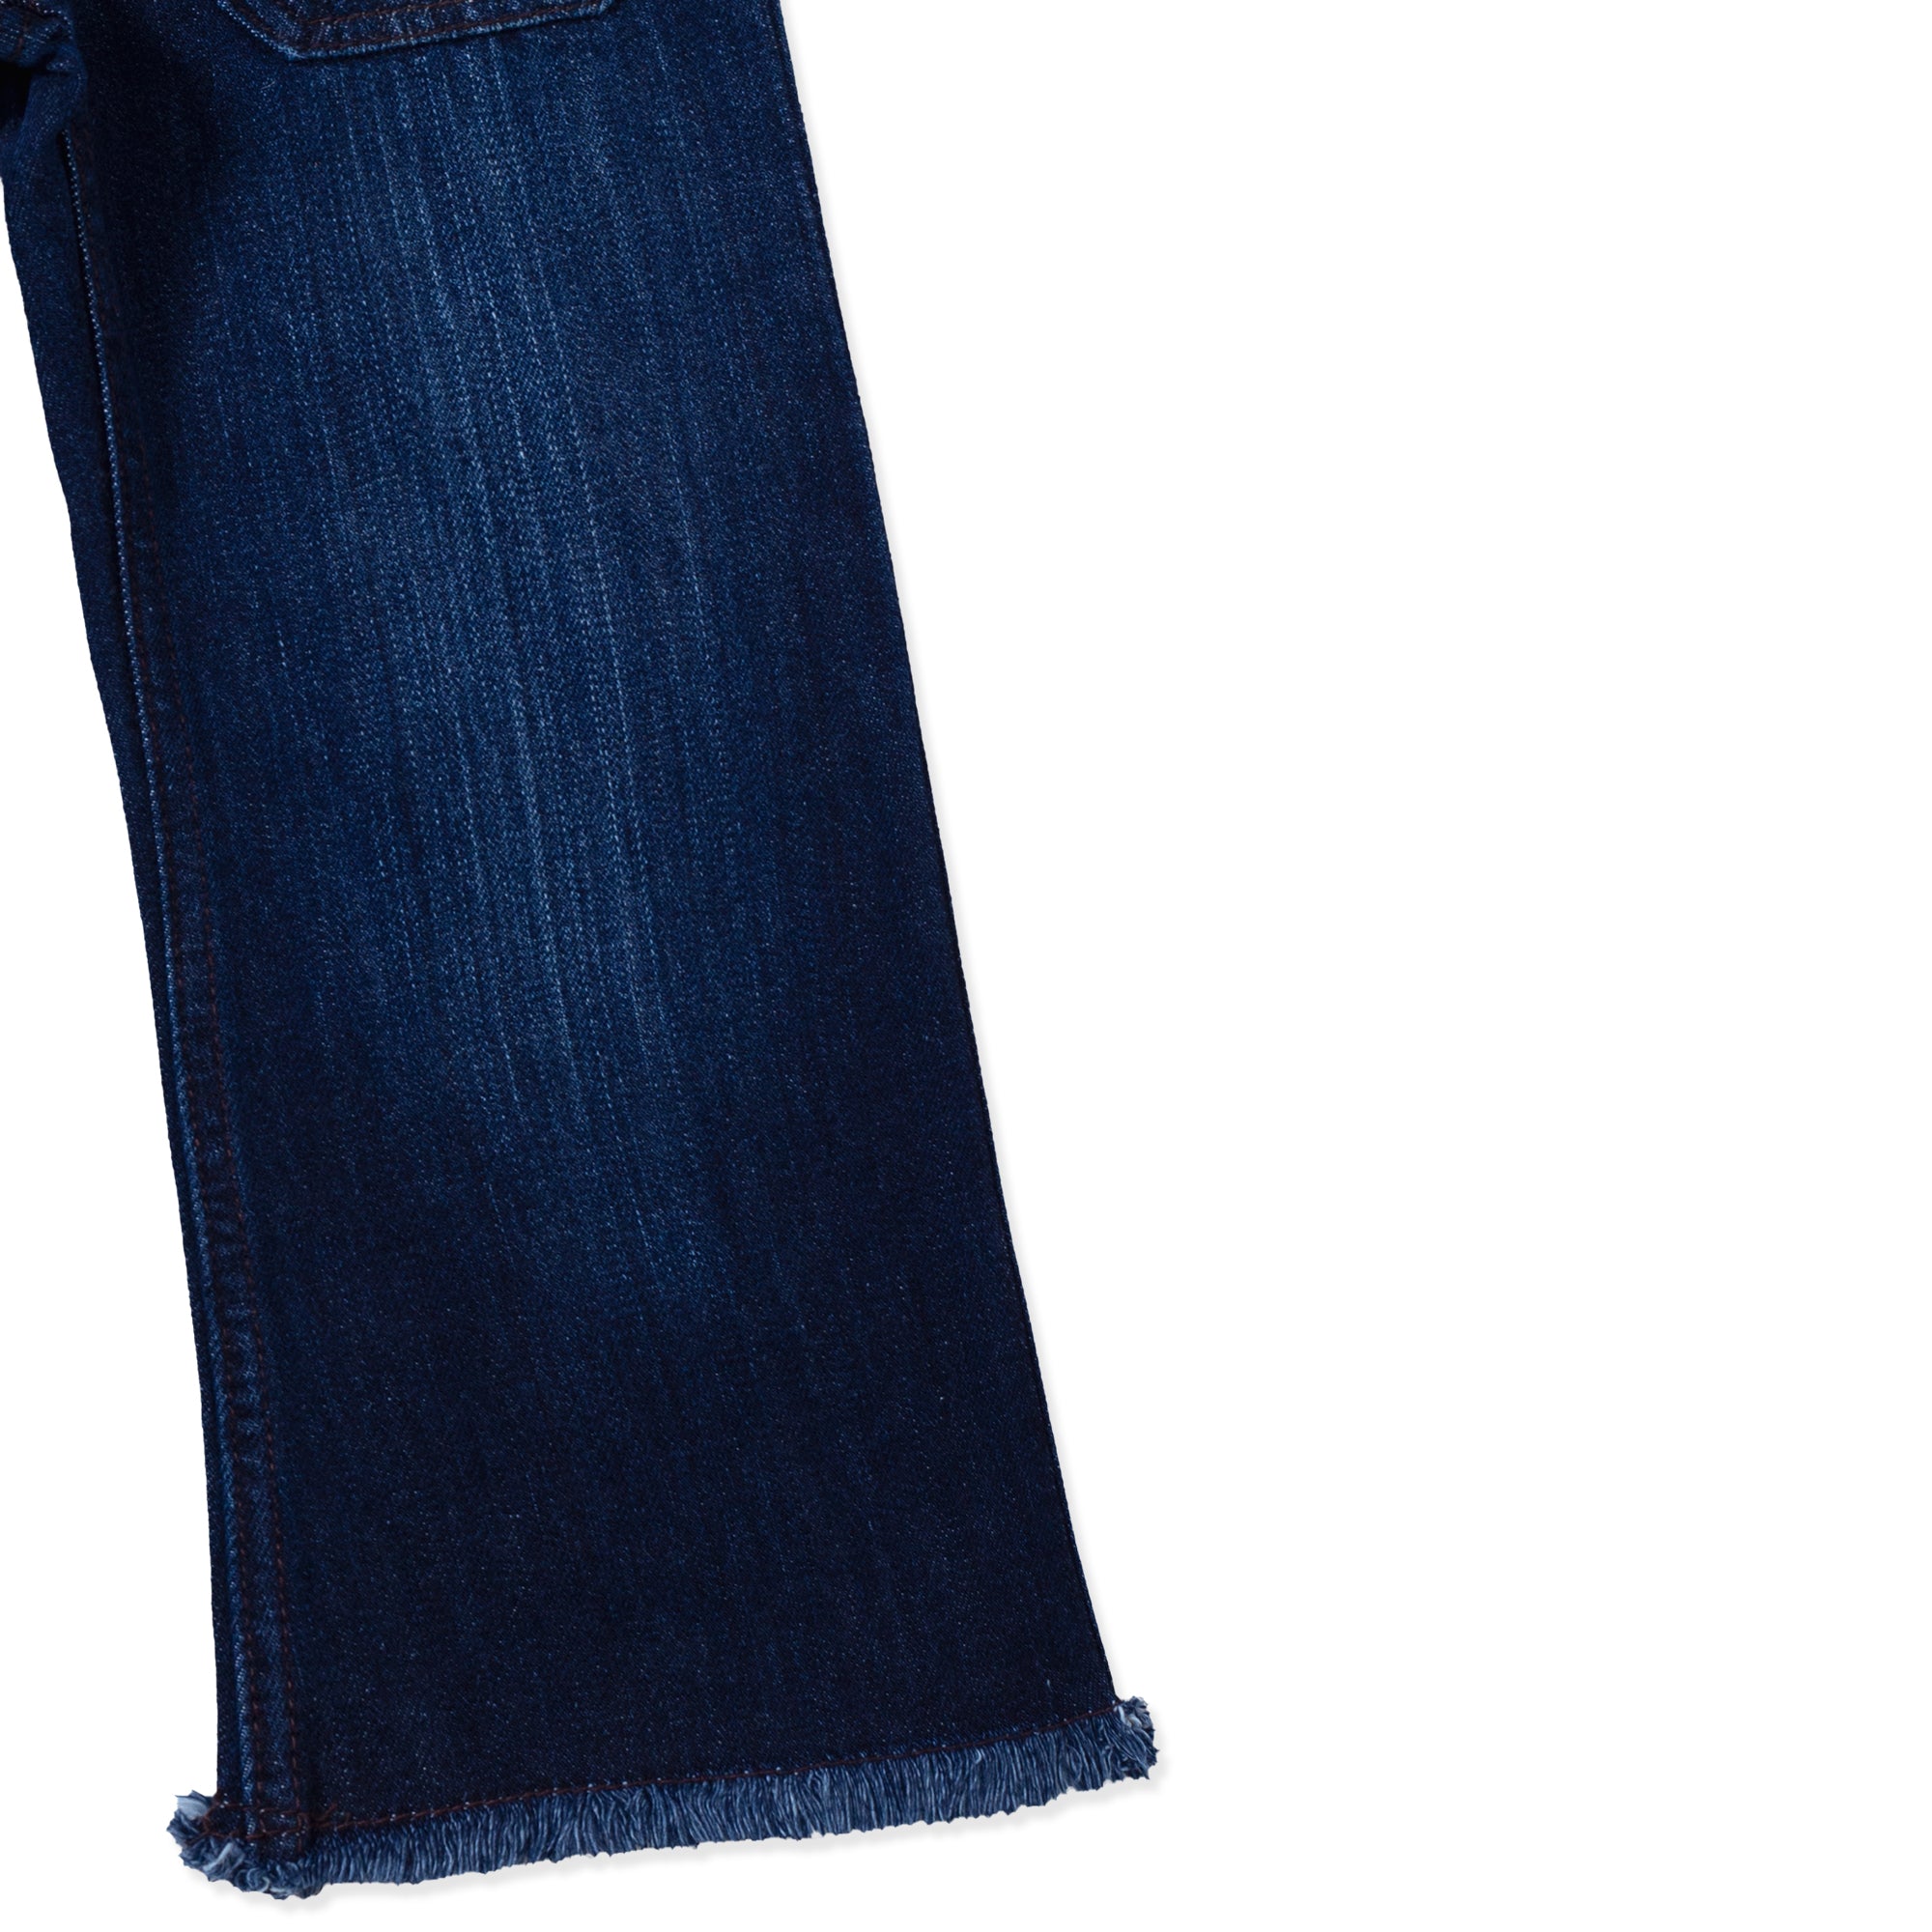 Girl's Navy Blue Jeans